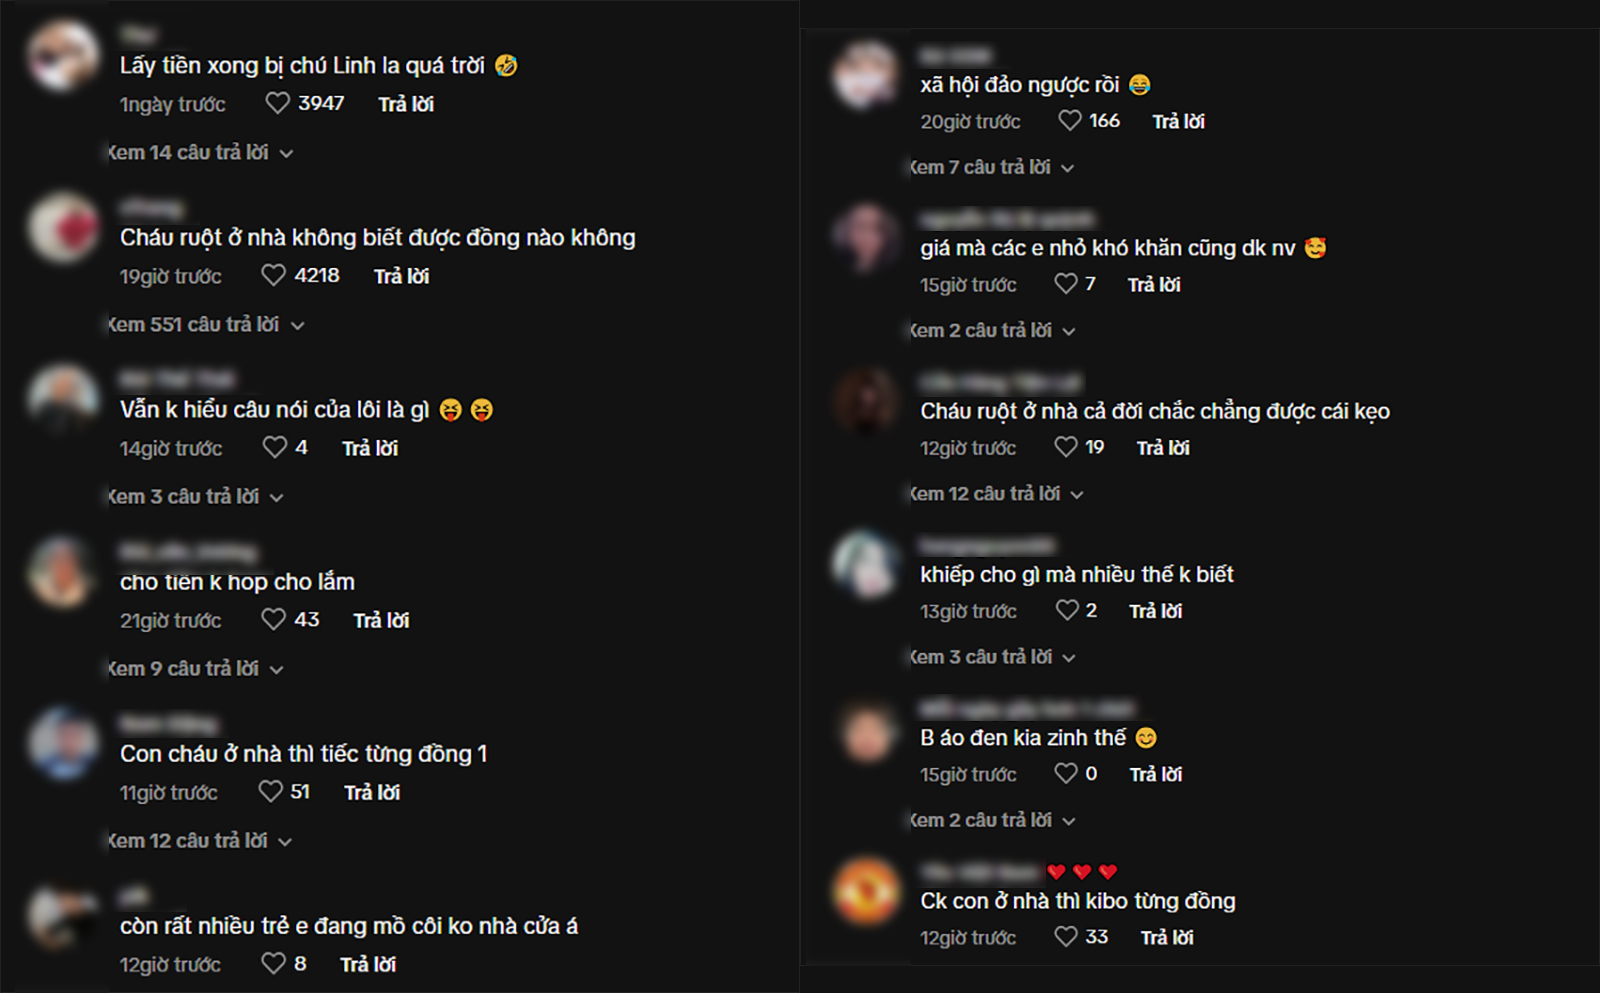 Nhiều bình luận chỉ trích bên dưới video Lôi Con nhận tiền thu hút hàng ngàn lượt like